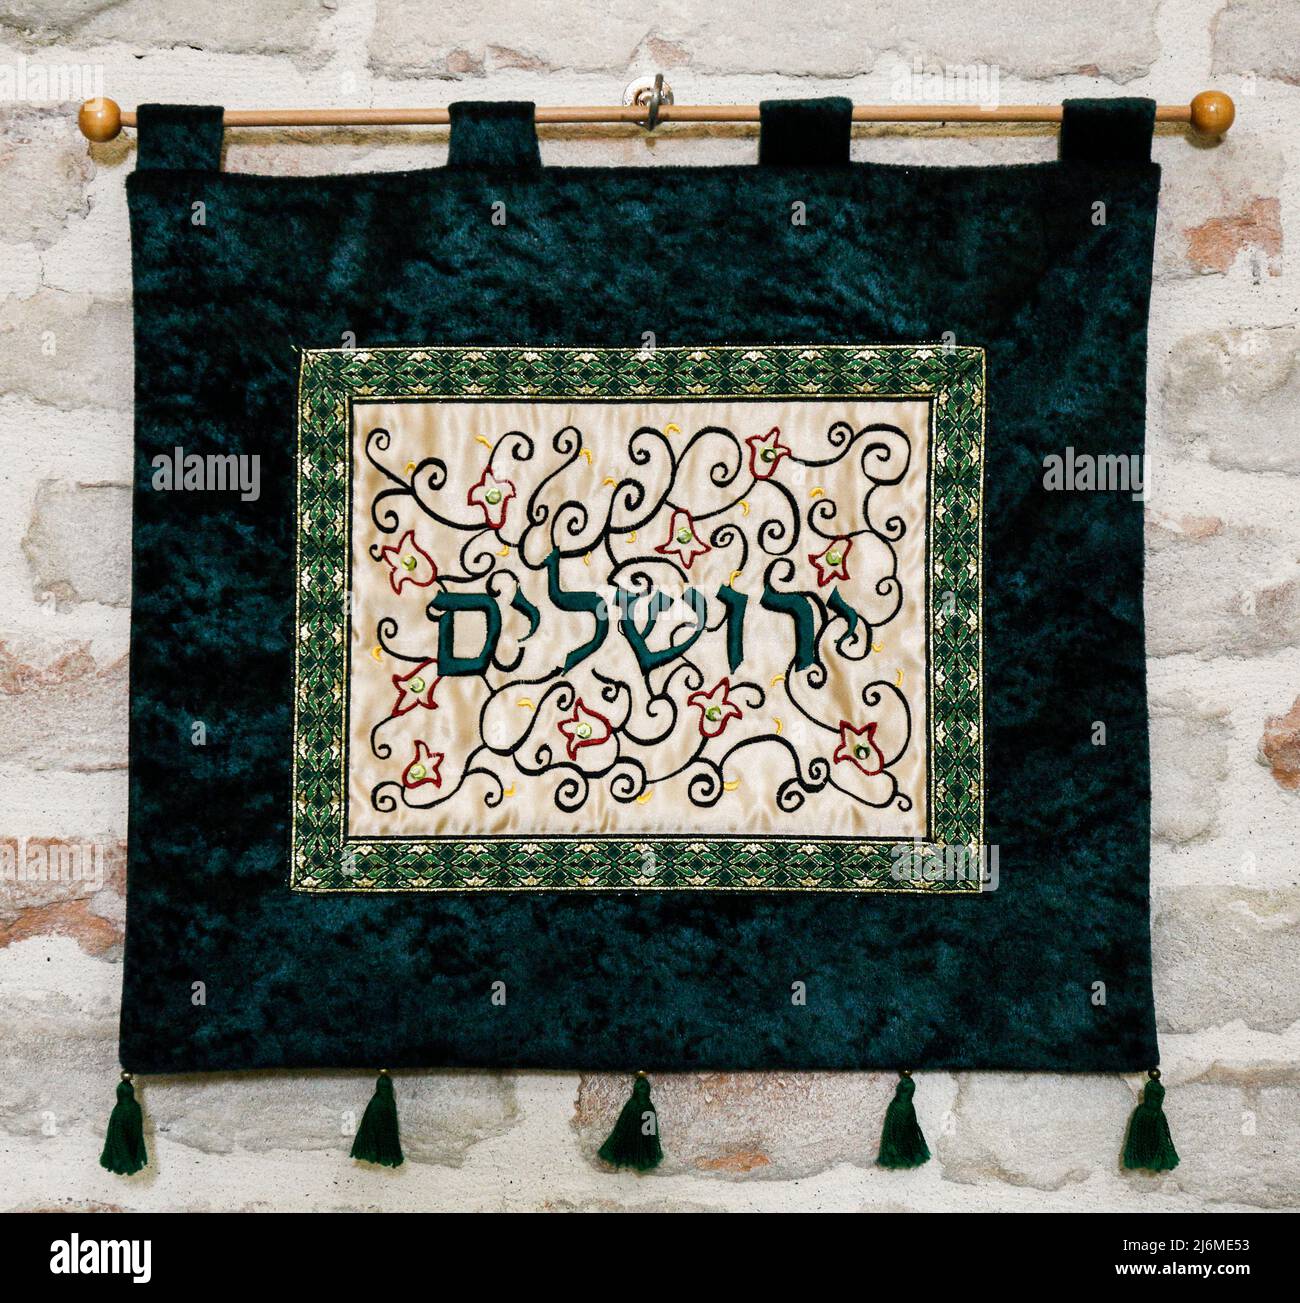 Italia Emilia Romagna Bertinoro: Museo Interreligioso: Pequeña bandera con la inscripción Jerusalén - Yerushalaim Foto de stock